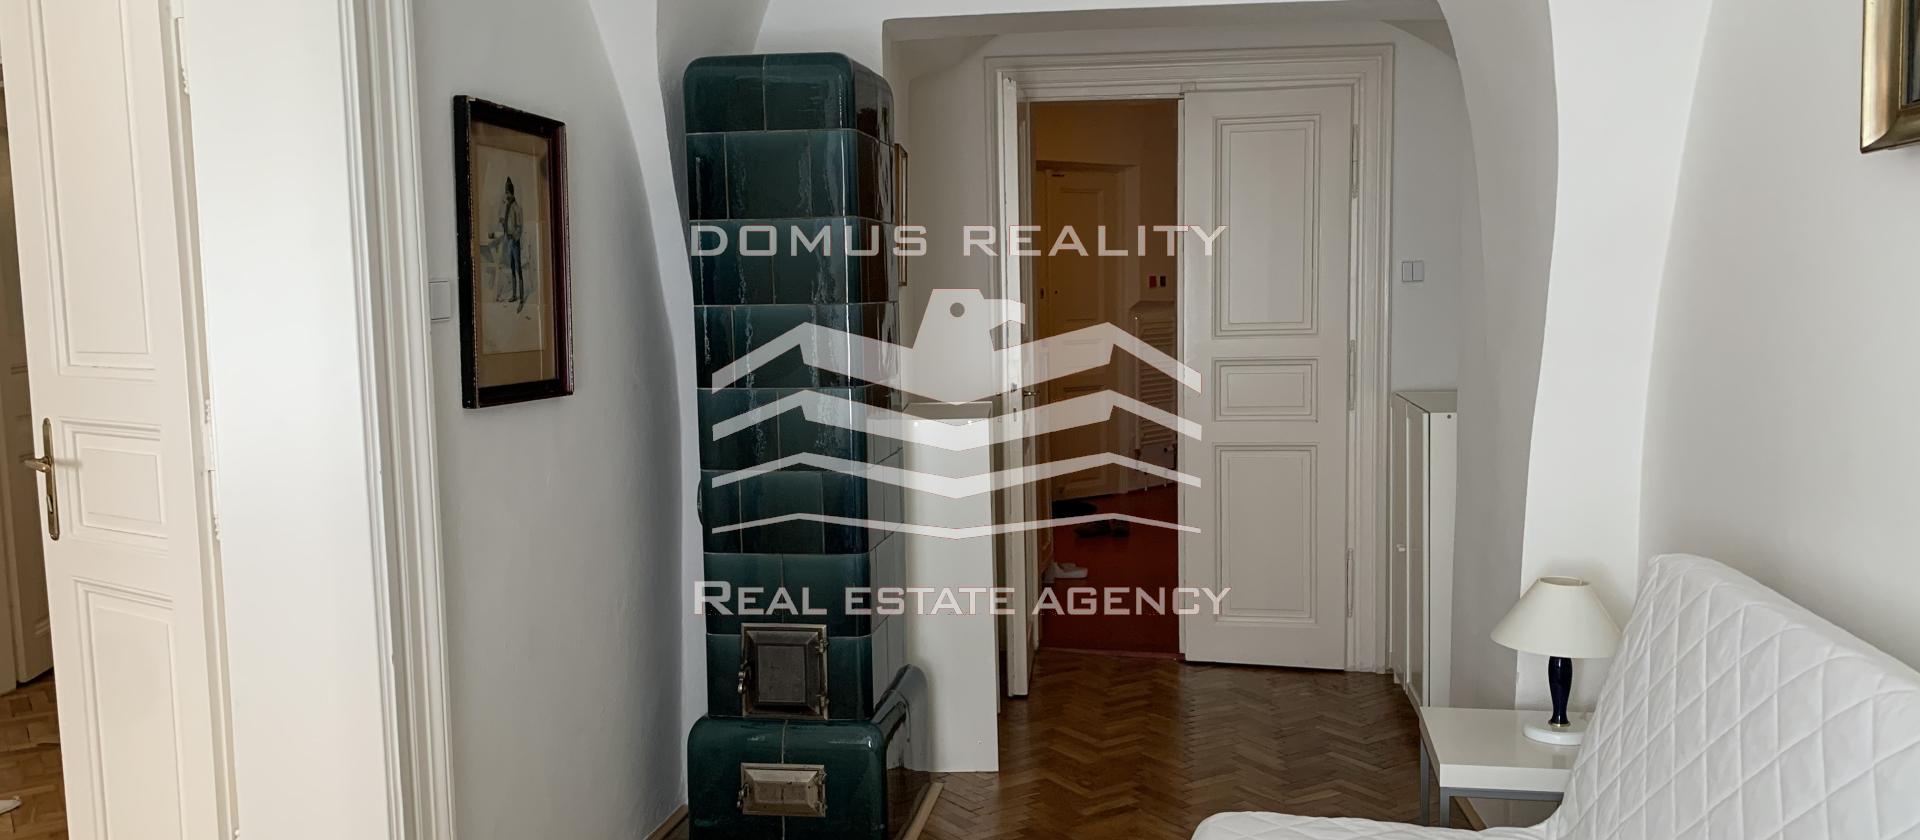 Velmi krásný a světlý byt 3+1 o rozloze 97 m2 s velkou vstupní halou se nachází v secesním cihlovém domě v blízkosti v centru Prahy 1